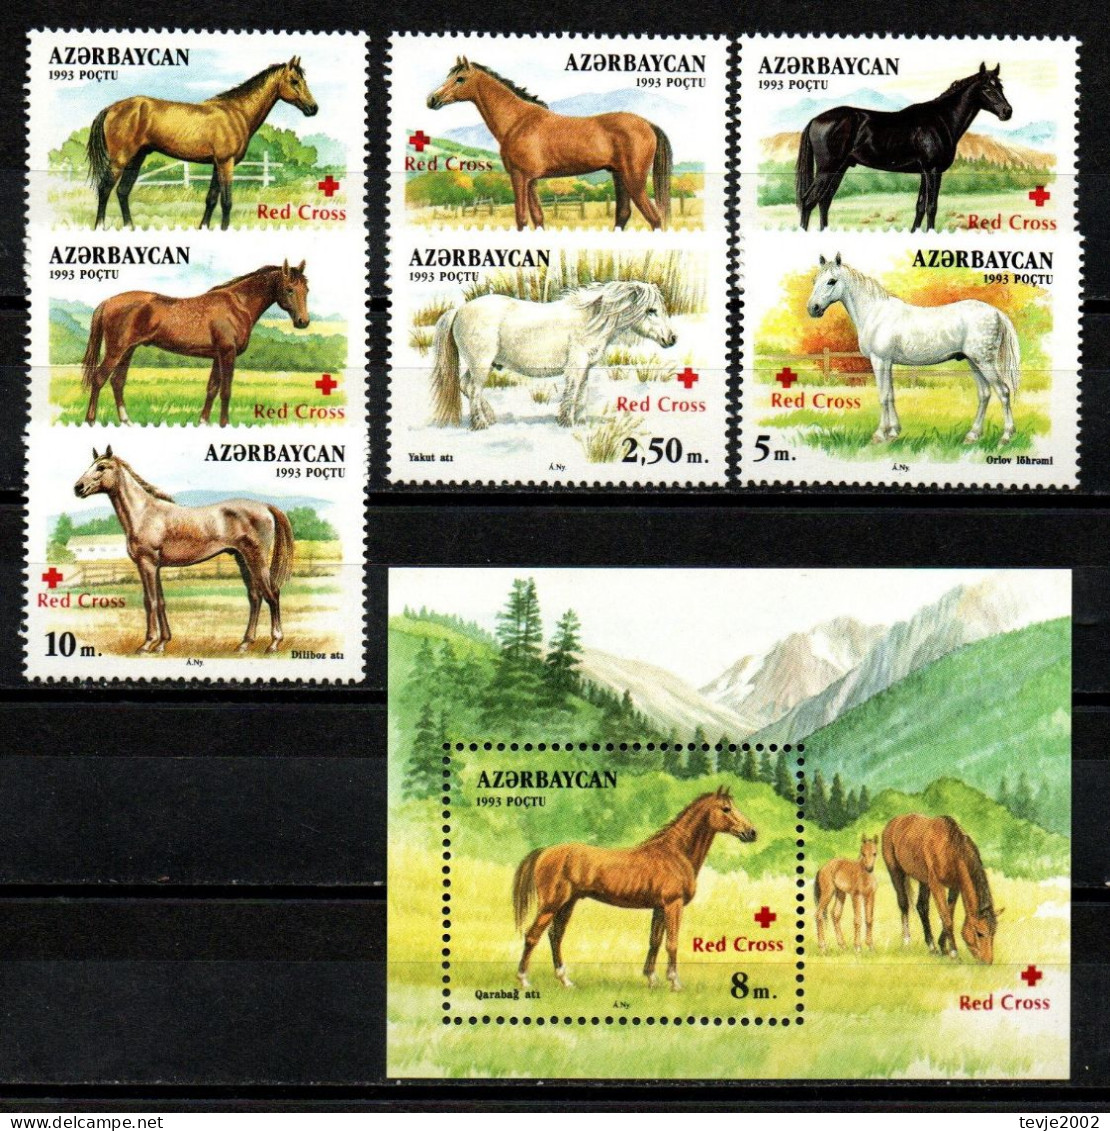 Aserbaidschan 1997 - Mi.Nr. 353 - 359 + Block 27 - Postfrisch MNH - Tiere Animals Pferde Horses Rotes Kreuz Red Cross - Aserbaidschan